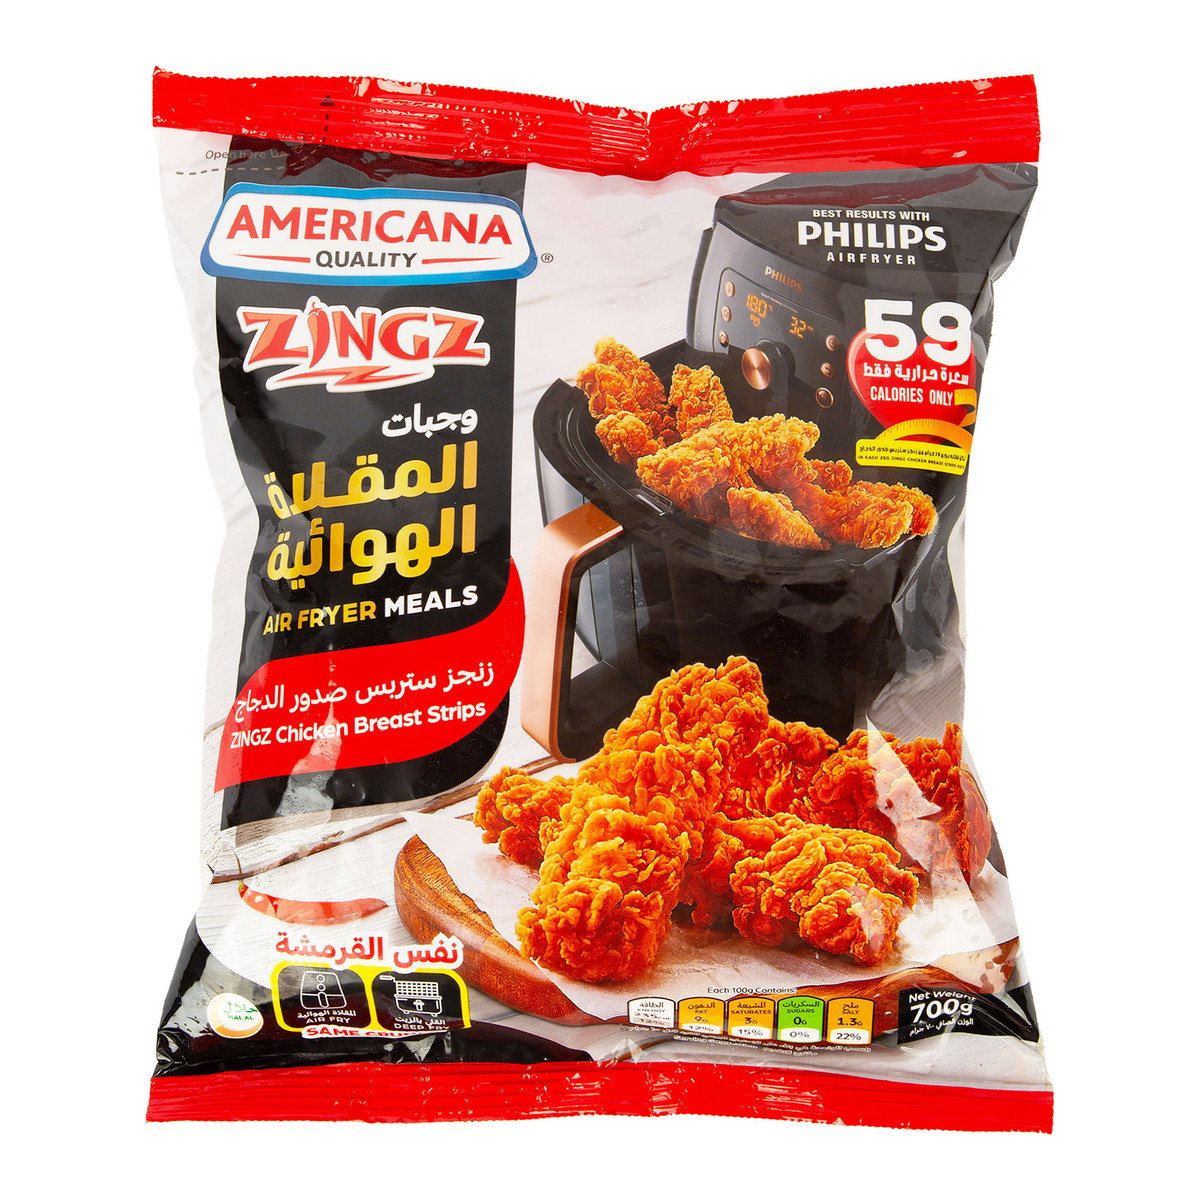 اشتري قم بشراء امريكانا زينجز شرائح صدور الدجاج, 700 جرام Online at Best Price من الموقع - من لولو هايبر ماركت FOOD FESTIVAL PHASE 1 - GROCERY في الكويت